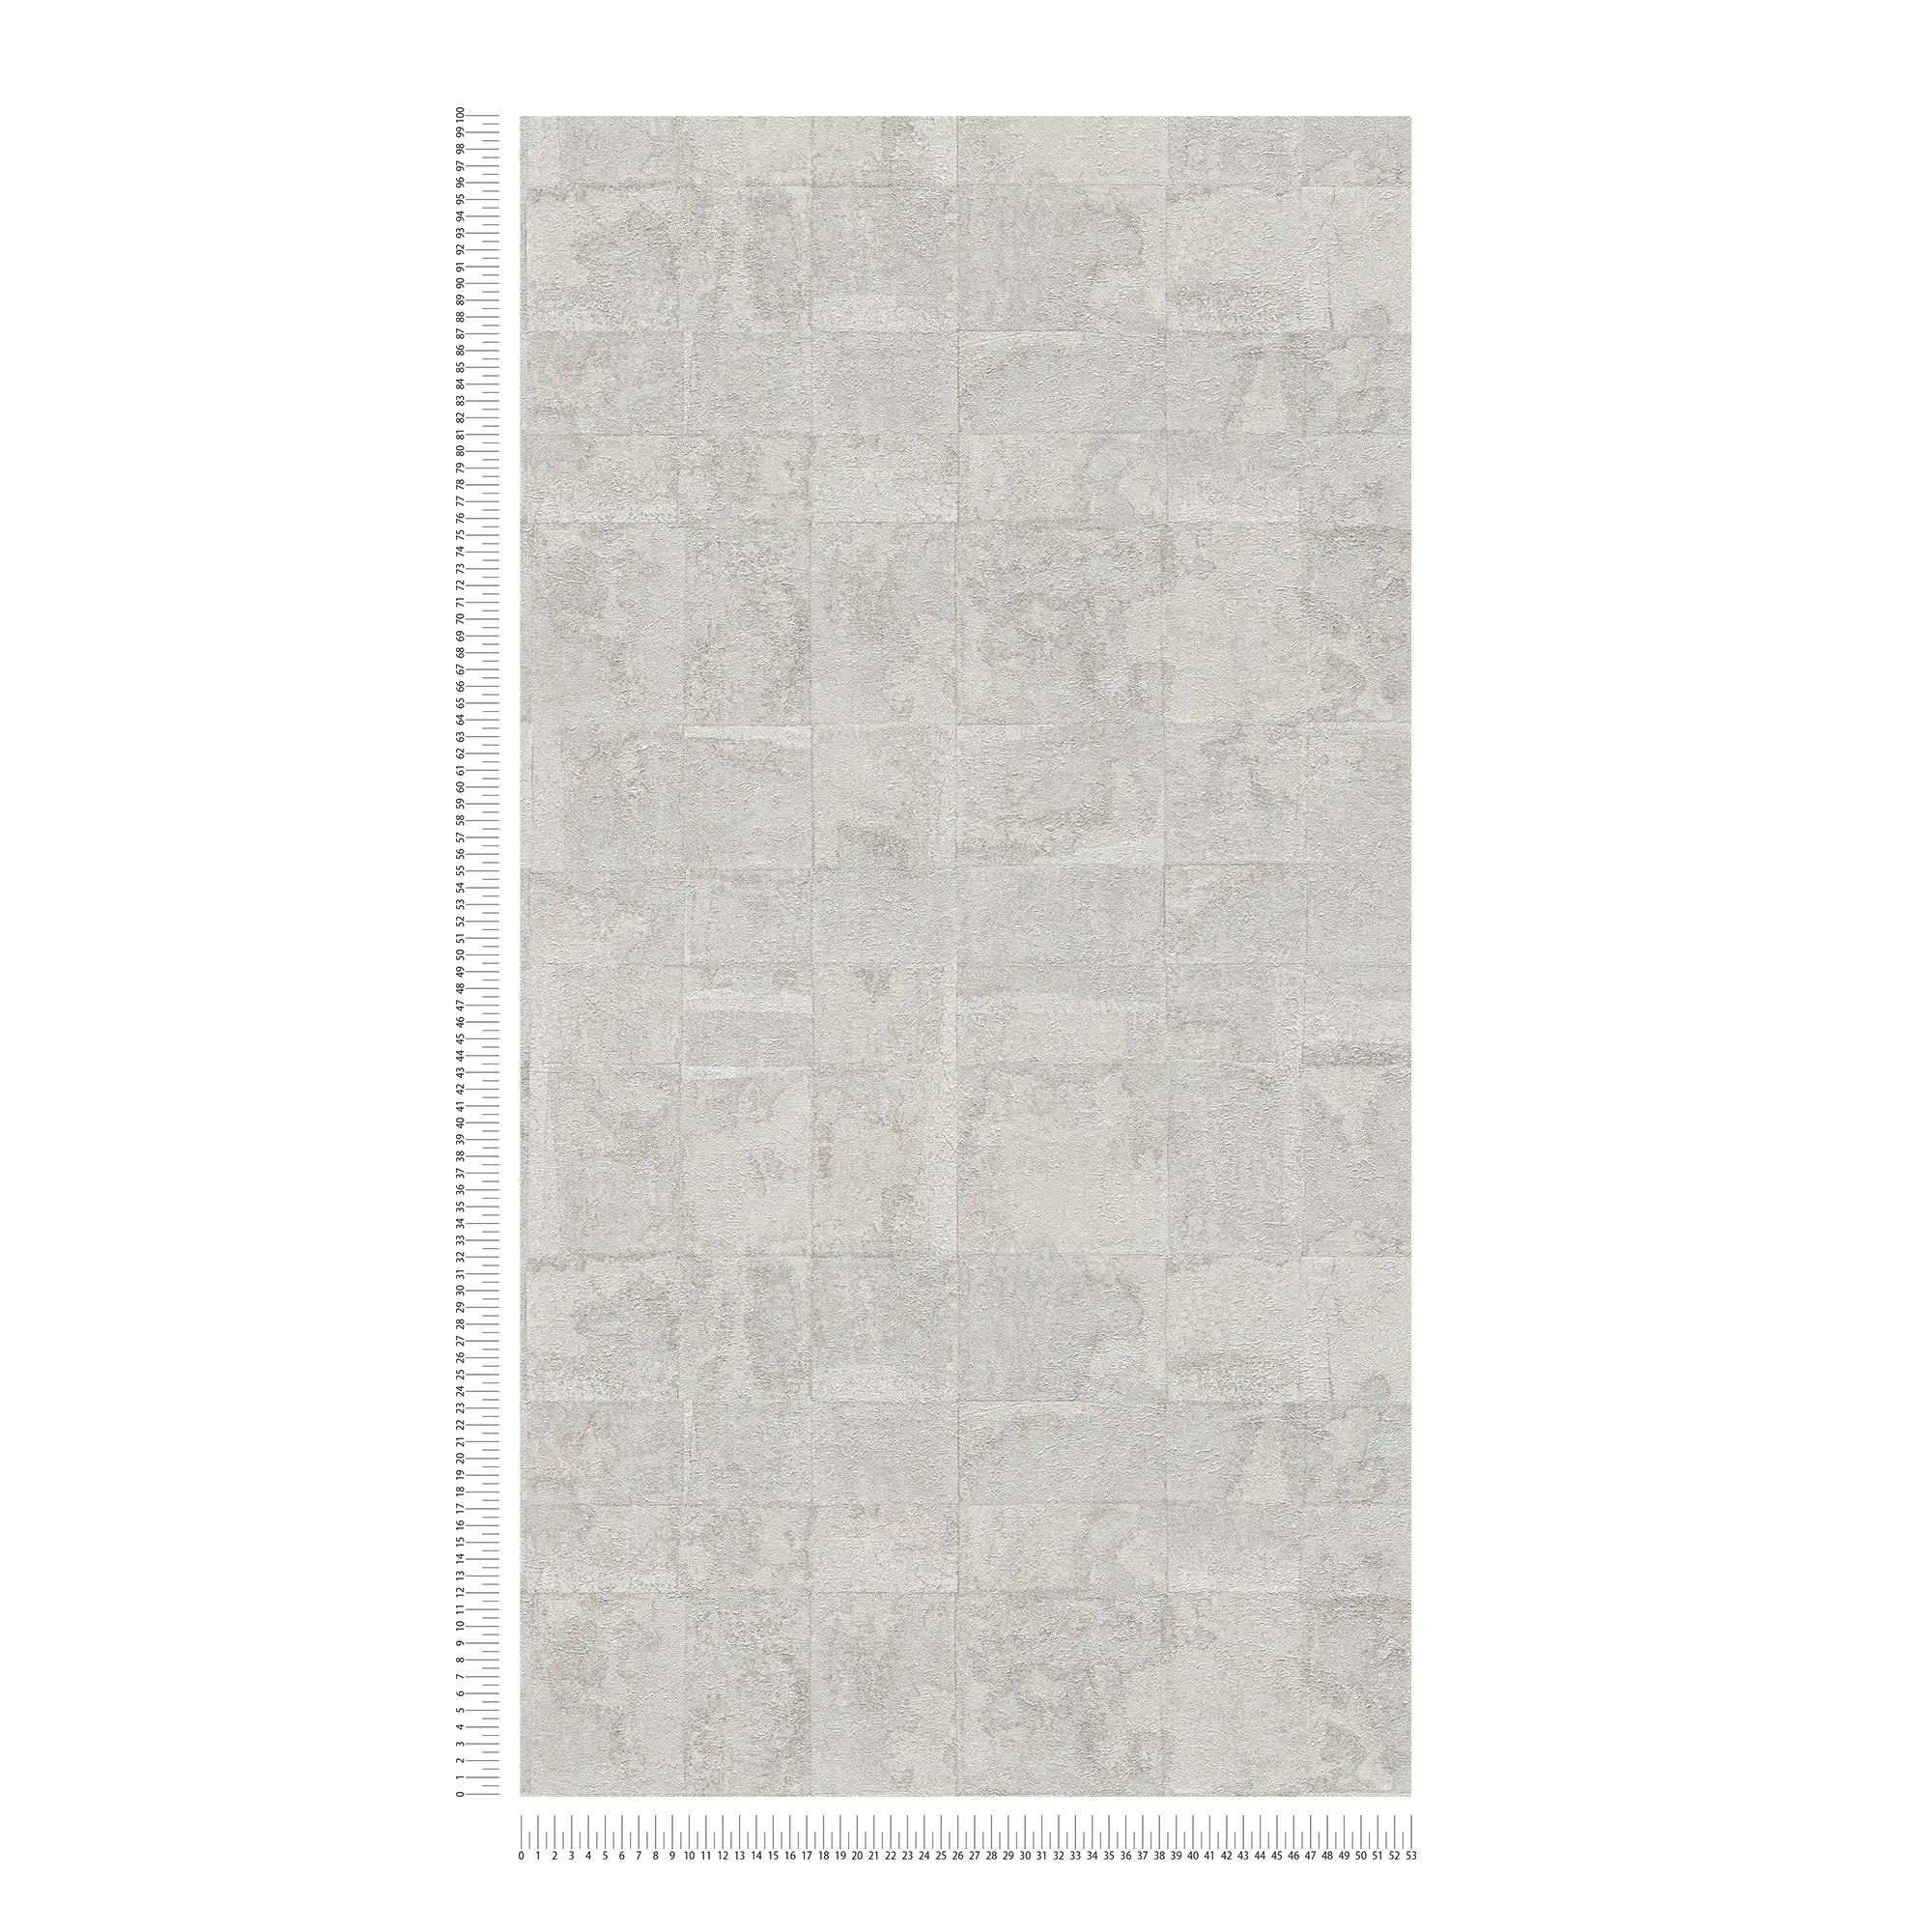             papier peint en papier structuré aspect carrelage - gris clair, argenté
        